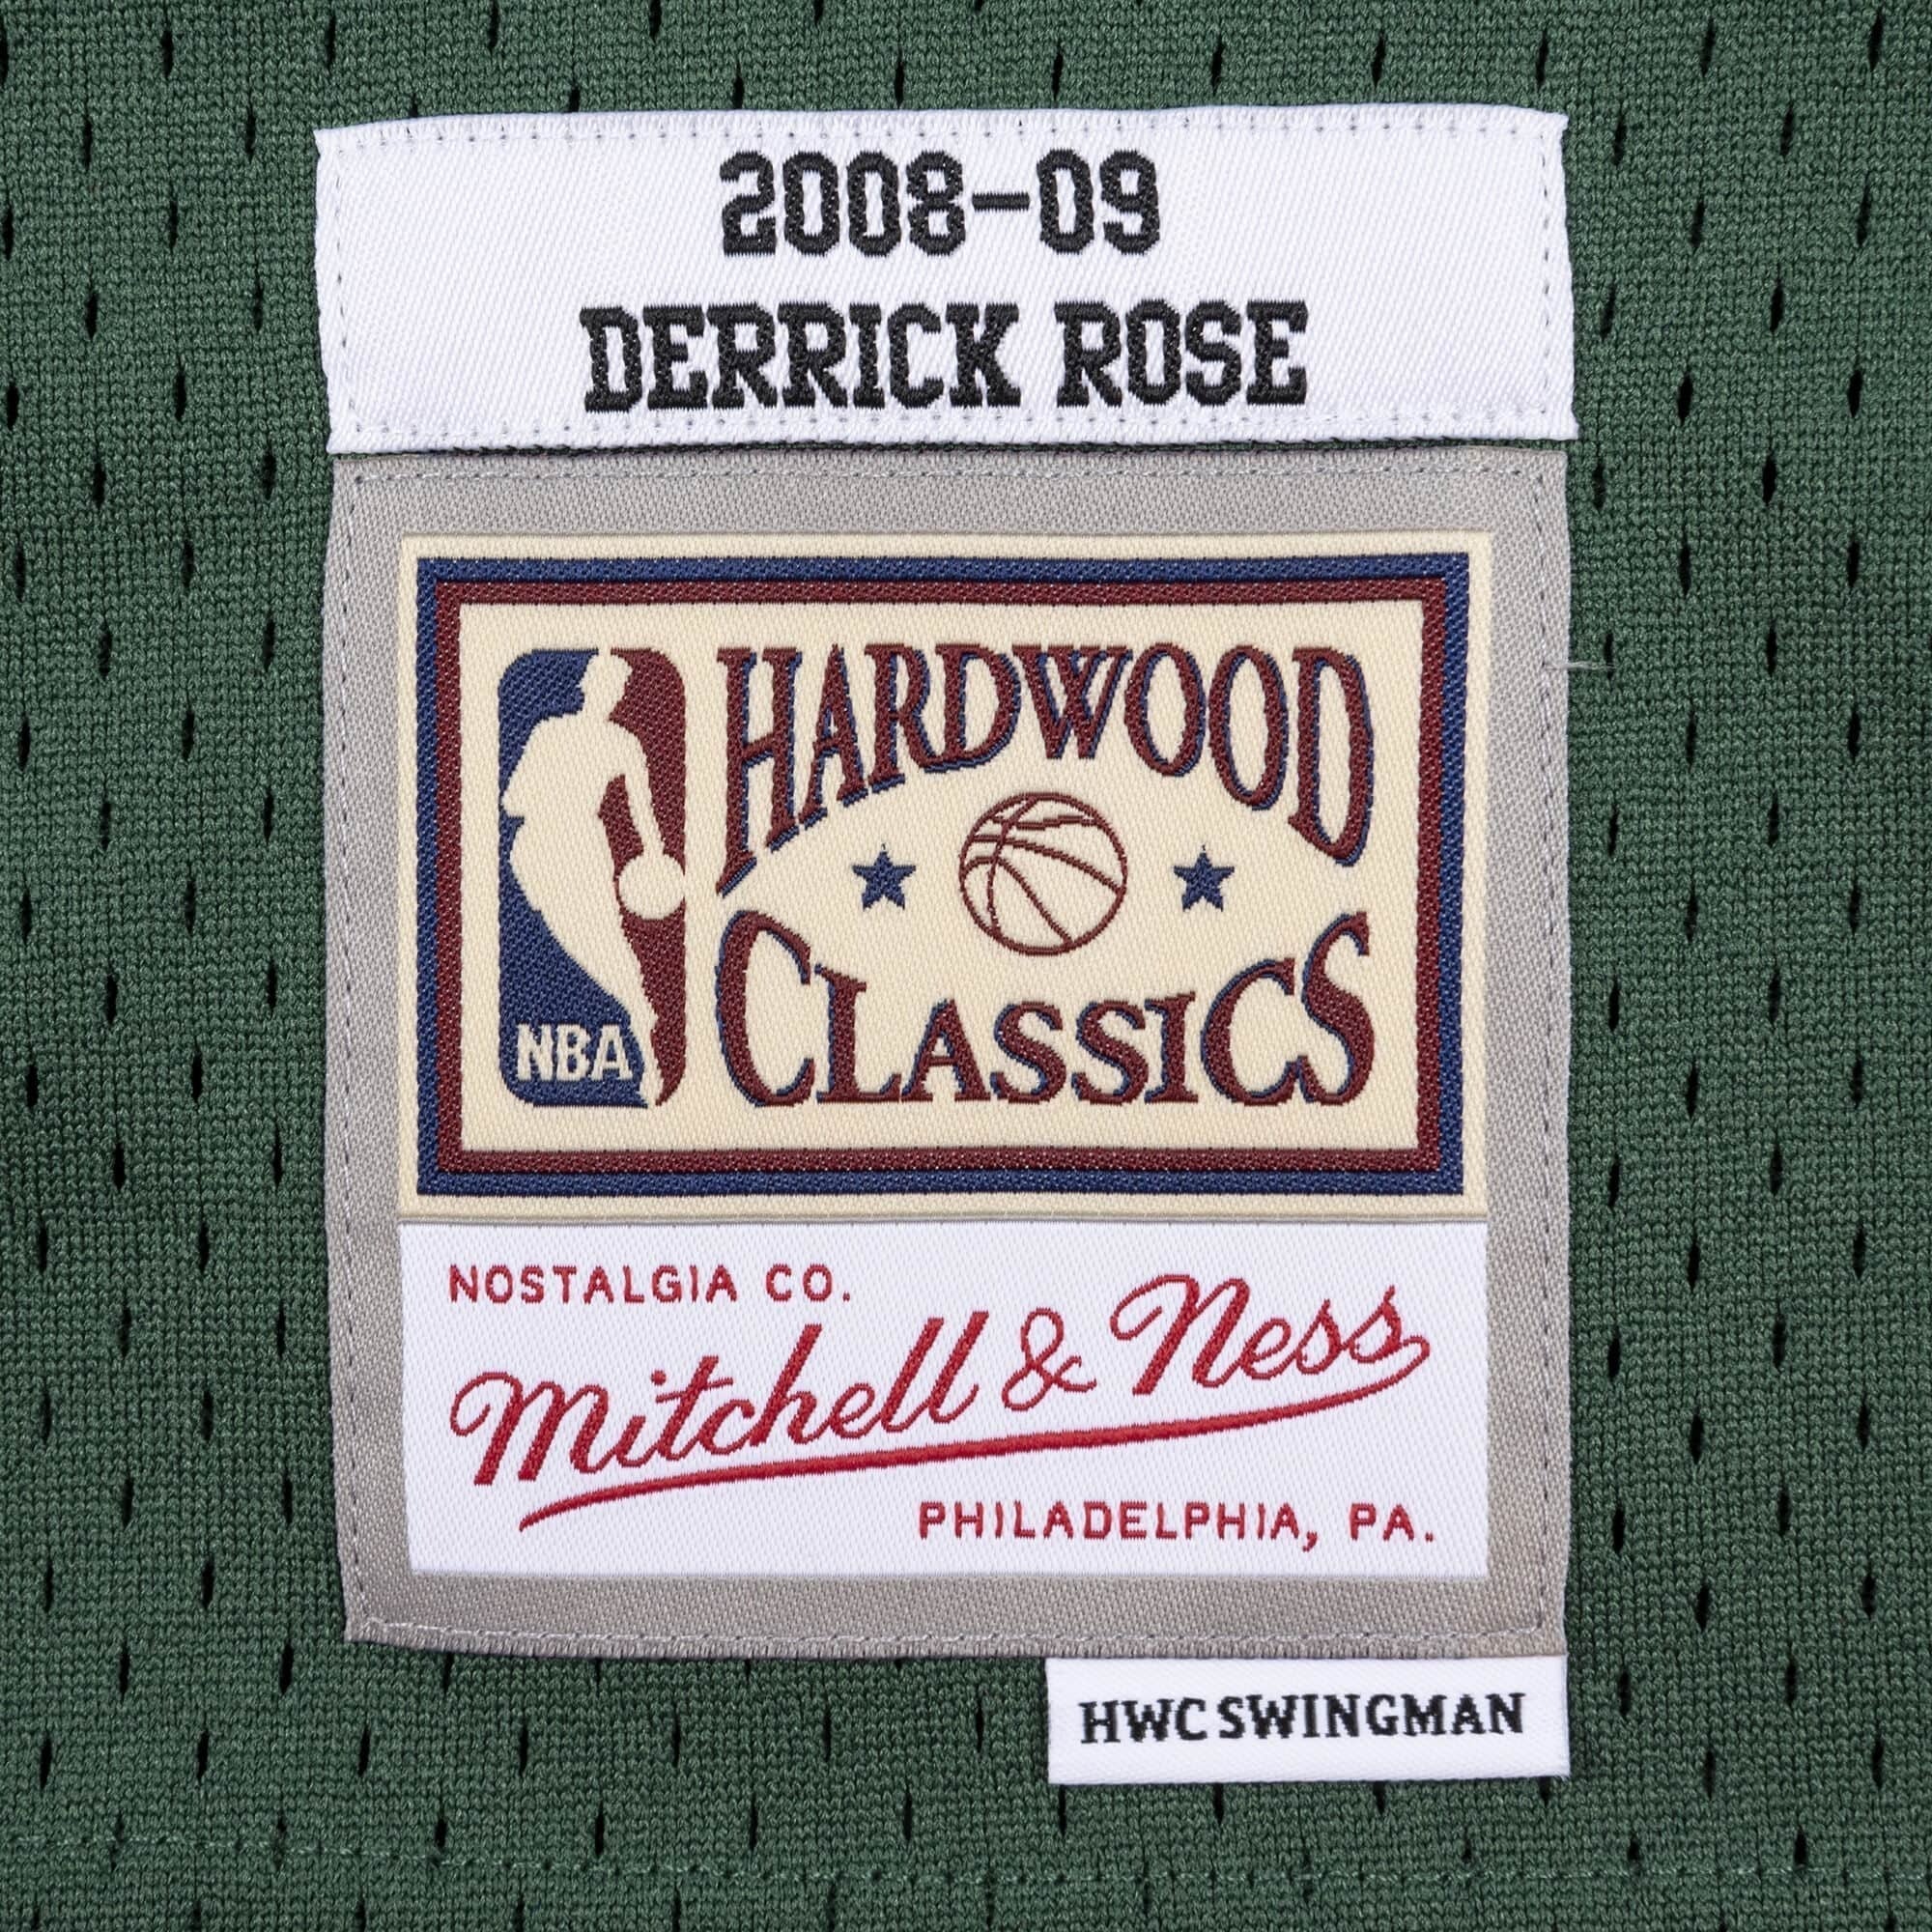 mitchell-and-ness-swingman-derrick-rose-chicago-bulls-nba-2008-09-jersey-smjycp19241-cbudkgn08drs